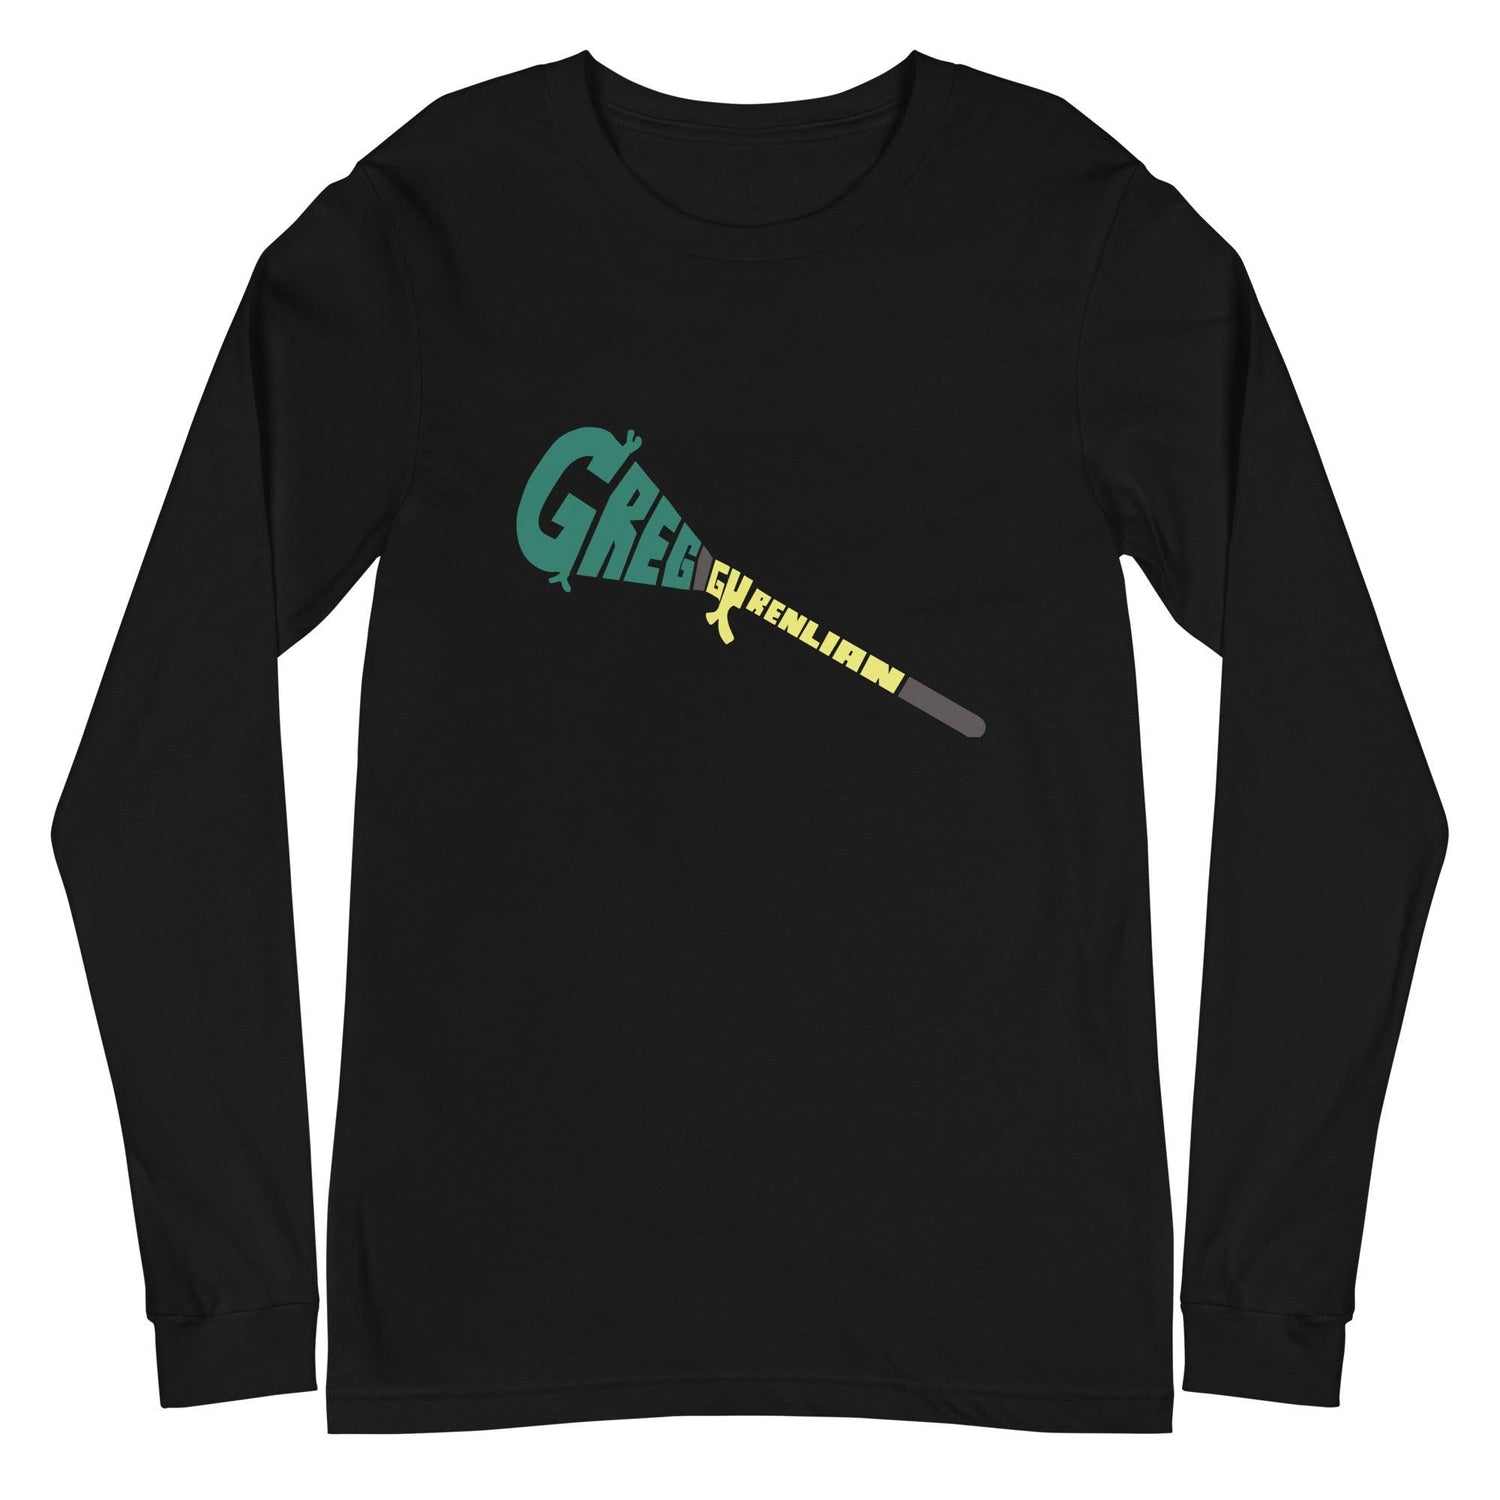 Greg Gurenlian "Essential" Long Sleeve Tee - Fan Arch